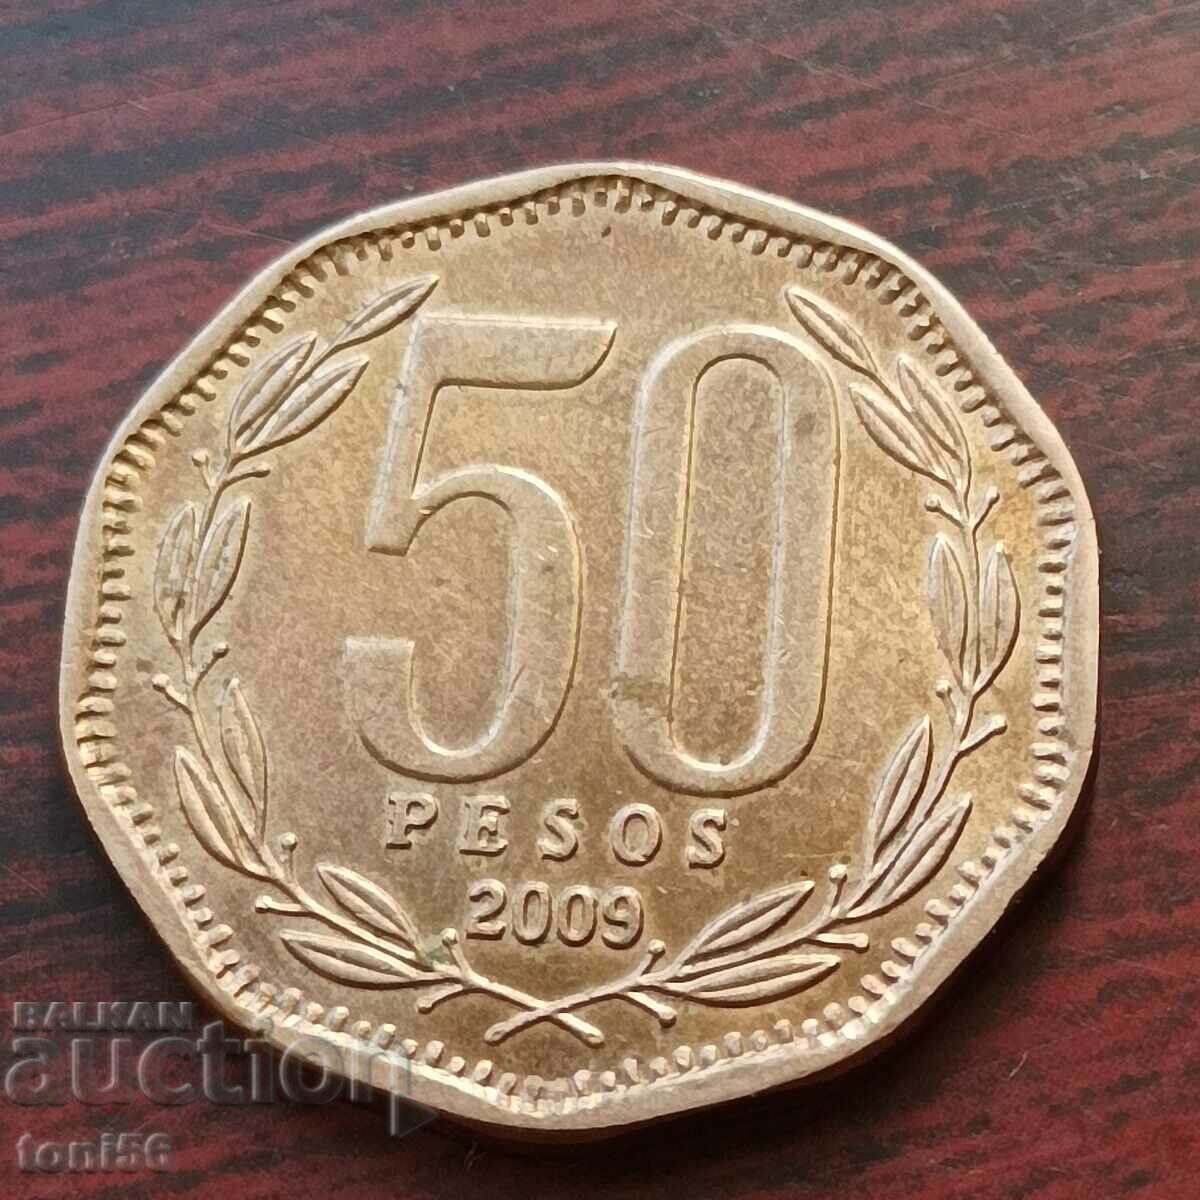 Chile 50 pesos 2009 - see description